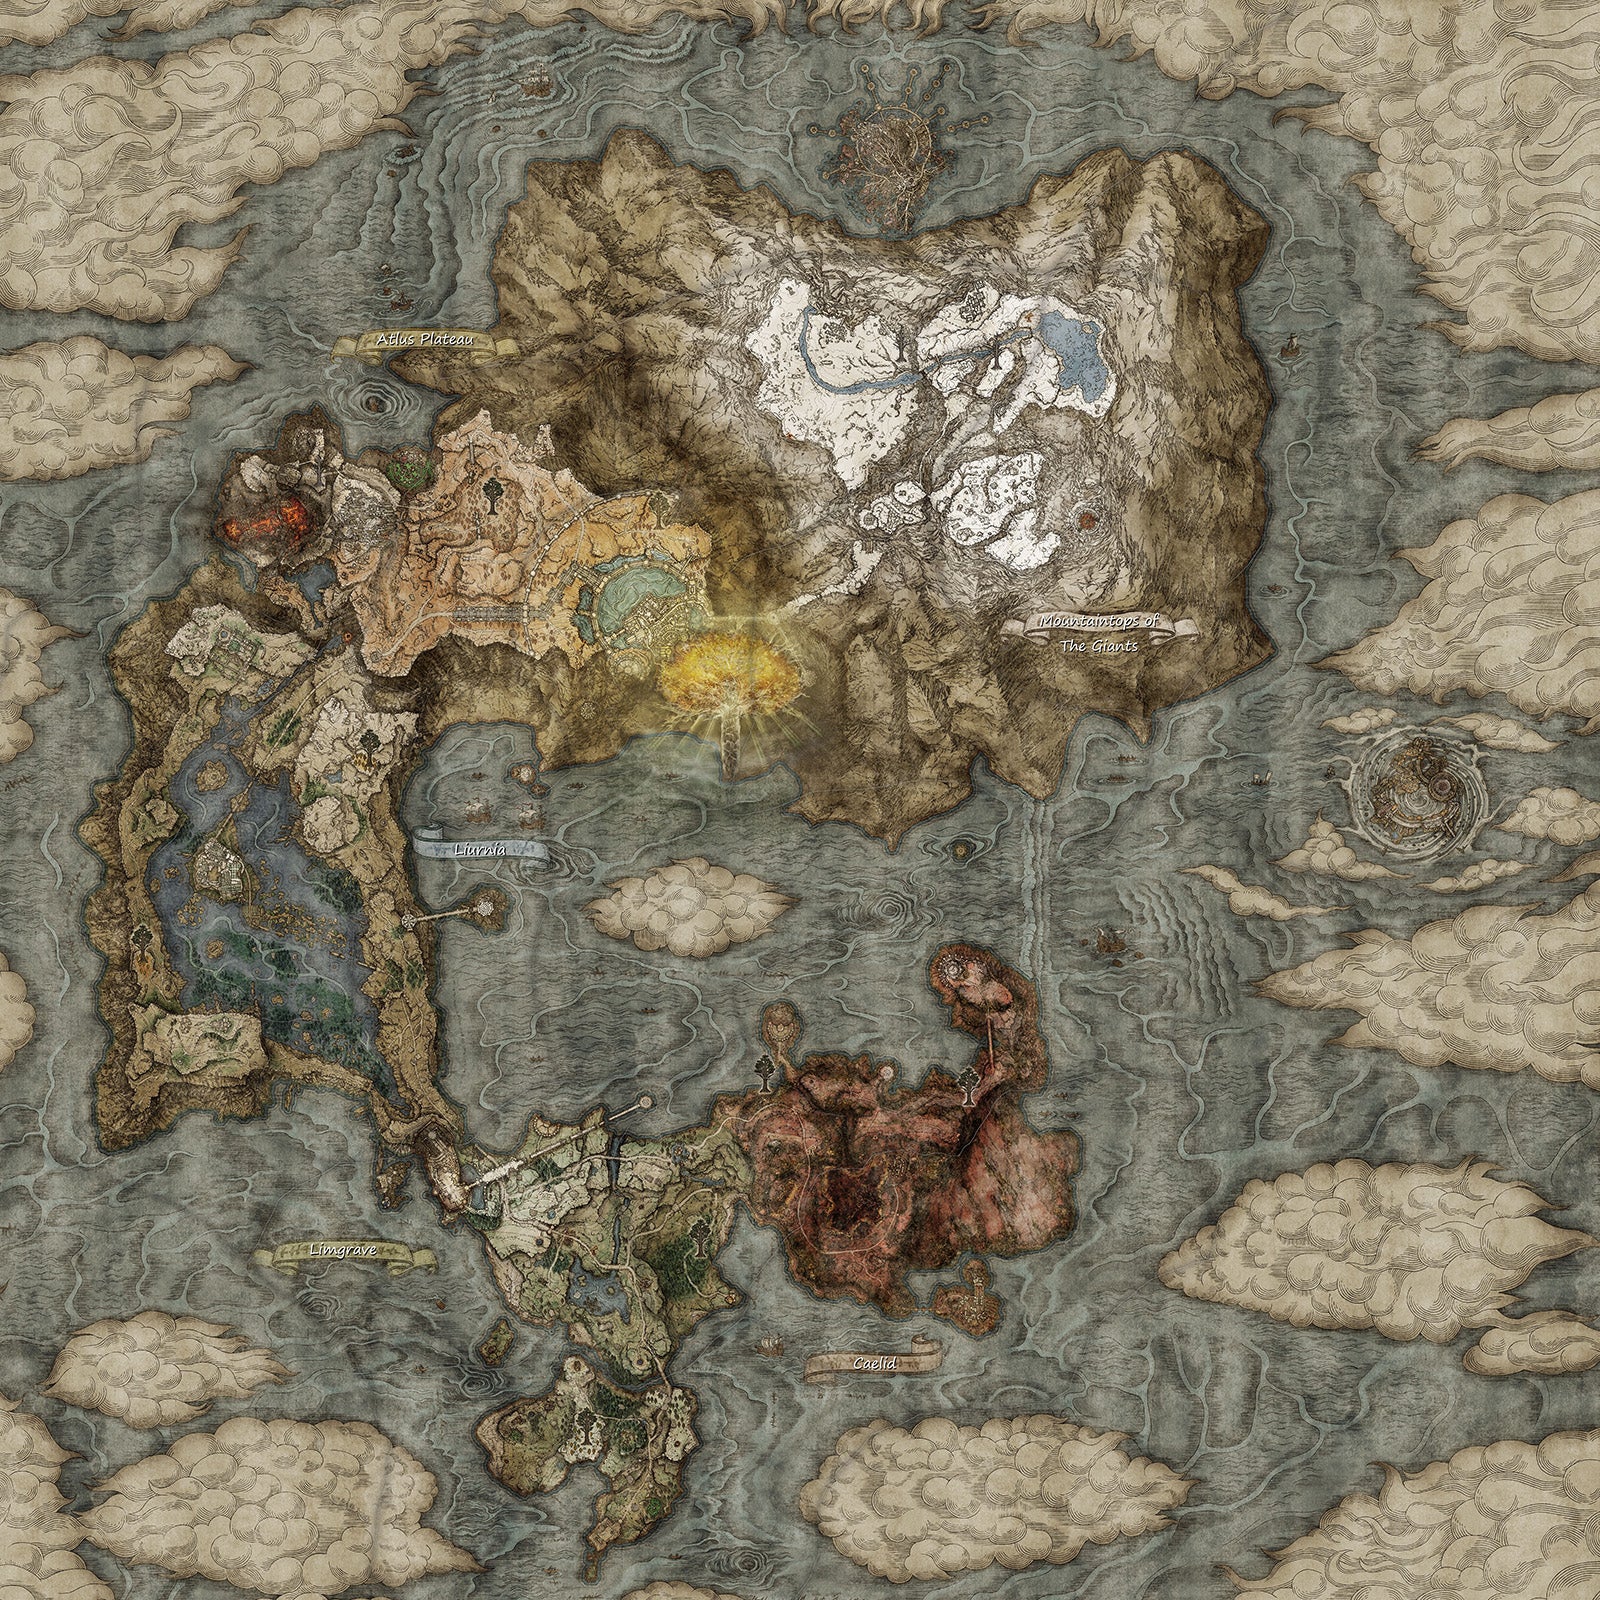 La mappa del mondo in Elden Ring, tutta bellissima e trapuntata. Un continente a forma di isola che assomiglia un po' a una virgola, con le nuvole che invadono dai bordi.